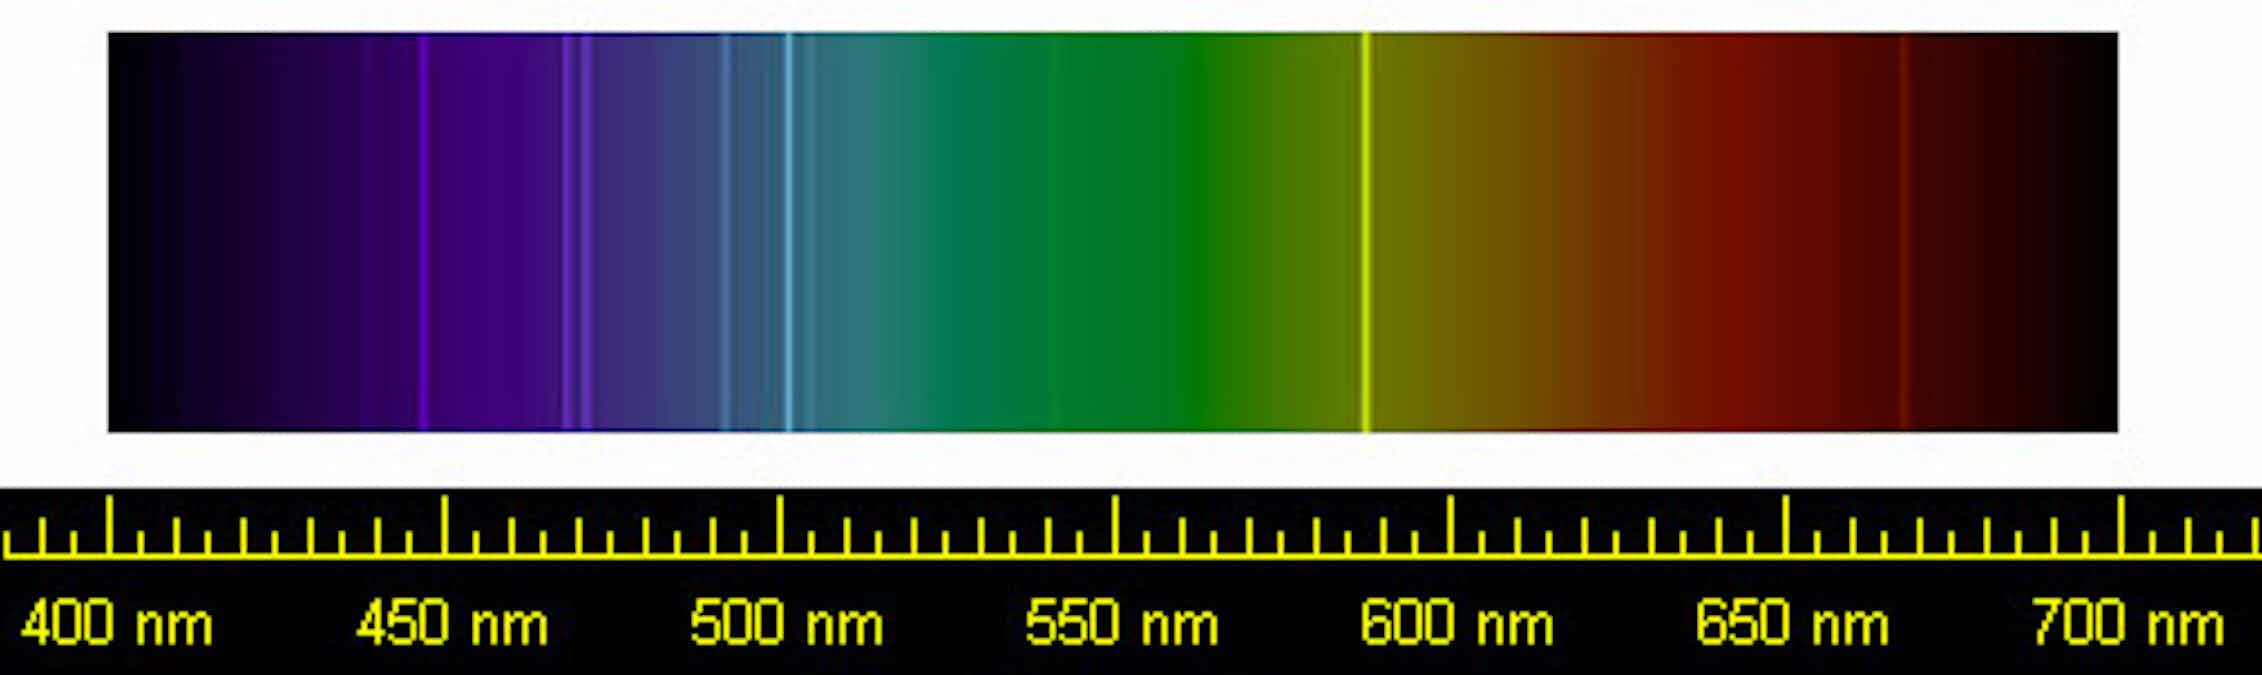 Линейчатый спектр излучения. Линейчатый спектр излучения водорода. Линейчатый спектр излучения гелия. Линейчатый спектр испускания водорода. Темные линии на фоне непрерывного спектра